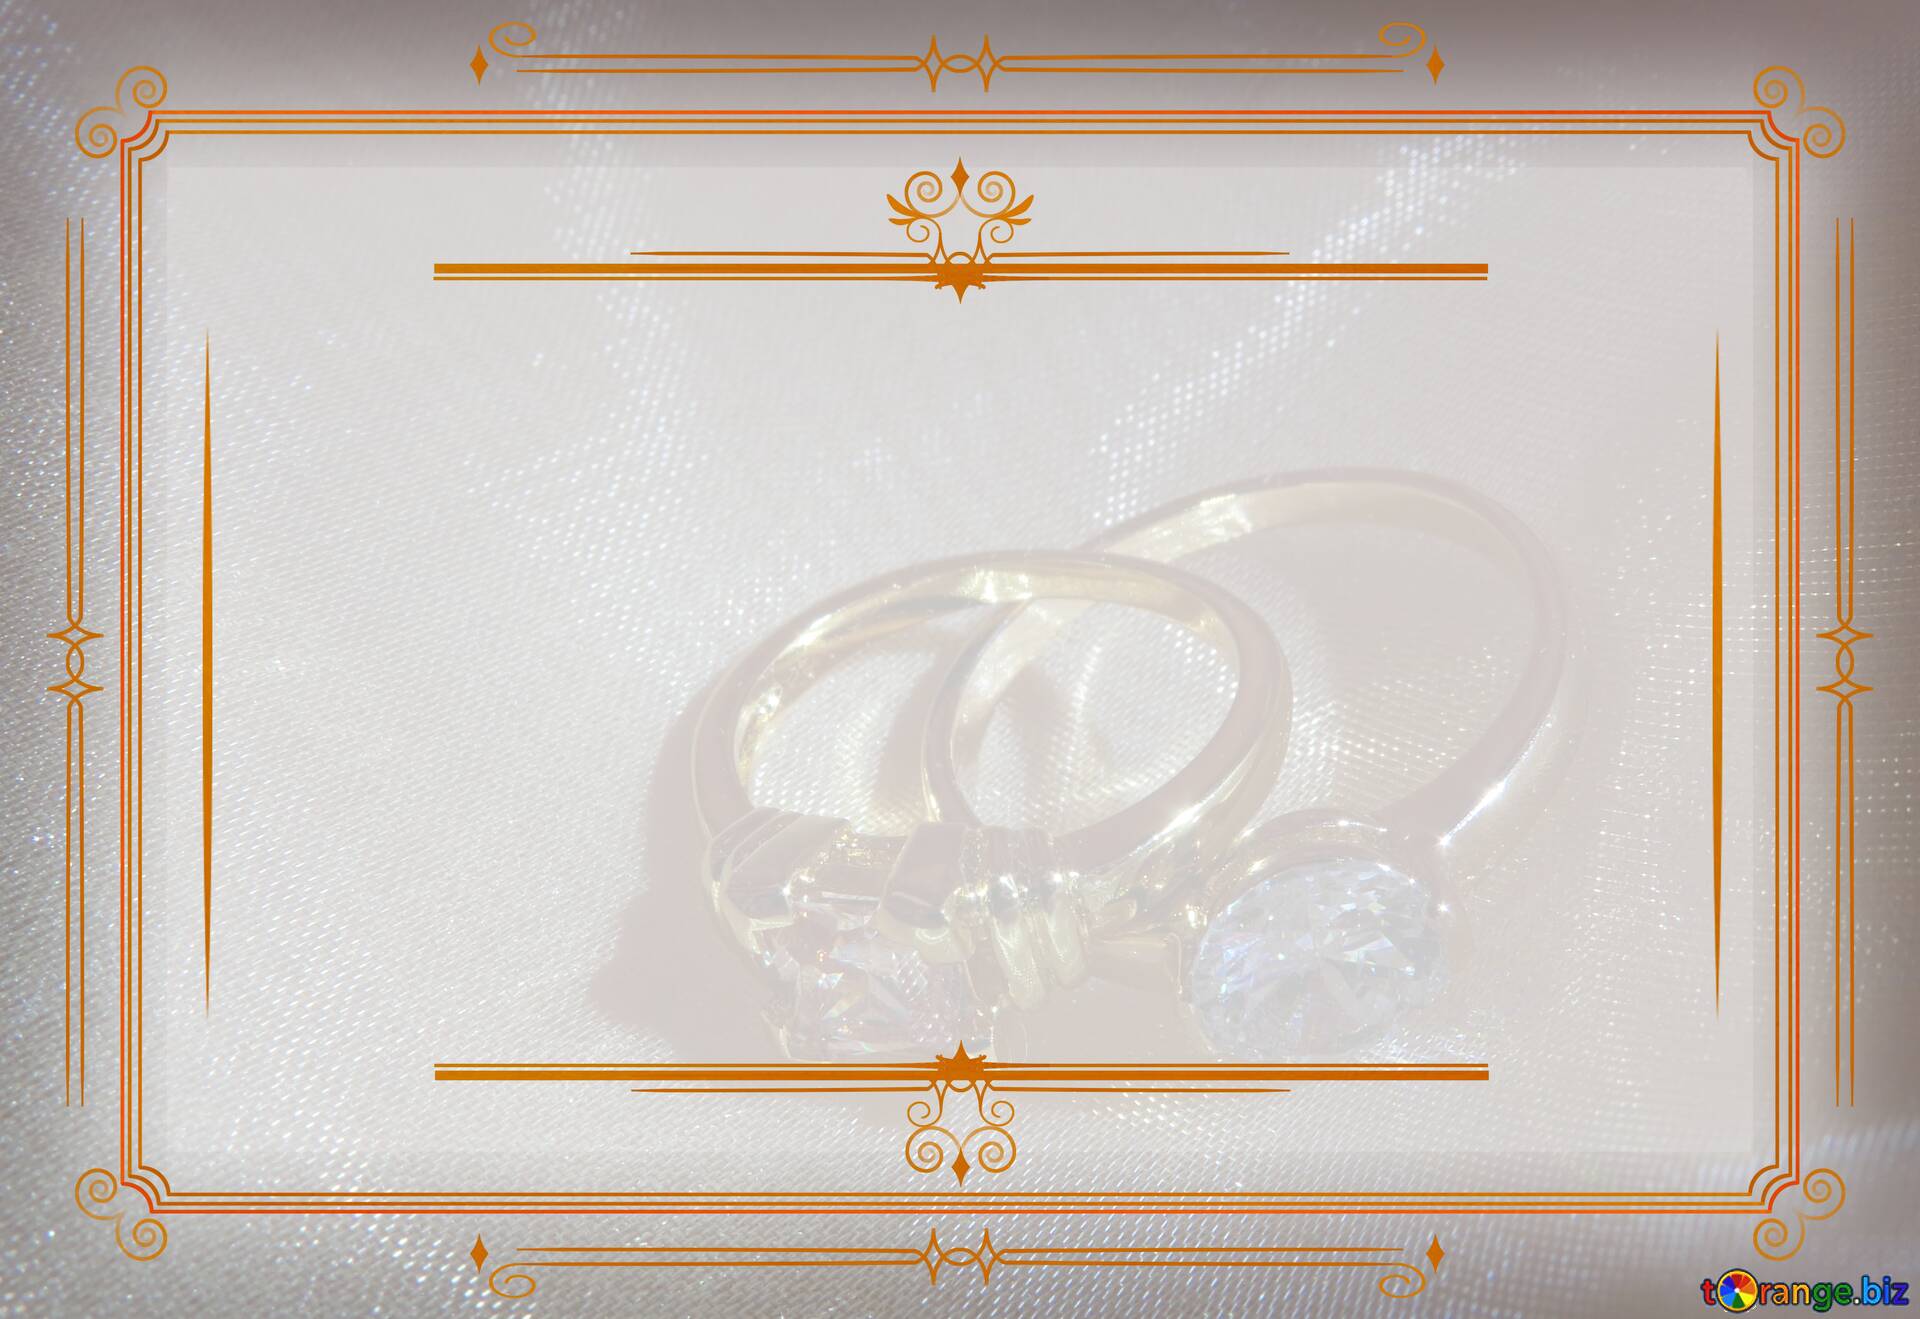 Mời bạn thưởng thức bộ sưu tập thiệp cưới tuyệt đẹp của chúng tôi. Với các mẫu thiết kế độc đáo và ấn tượng, bạn sẽ chắc chắn tìm được thiệp cưới hoàn hảo cho ngày trọng đại của mình.